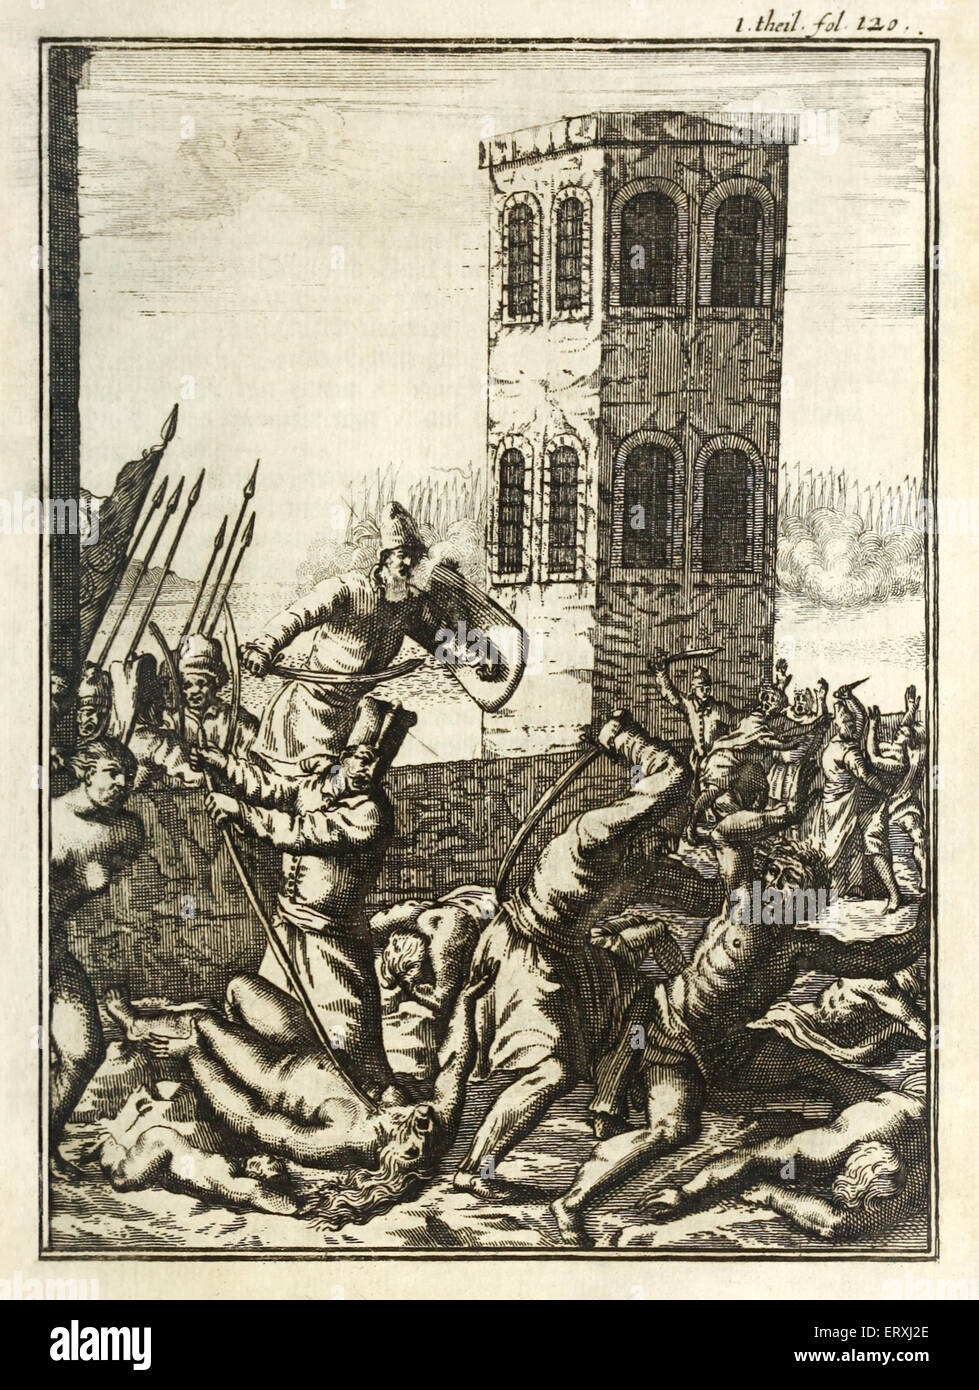 Kupferstich von Herman Padtbrugge (1656-1687). Siehe Beschreibung für mehr Informationen. Stockfoto